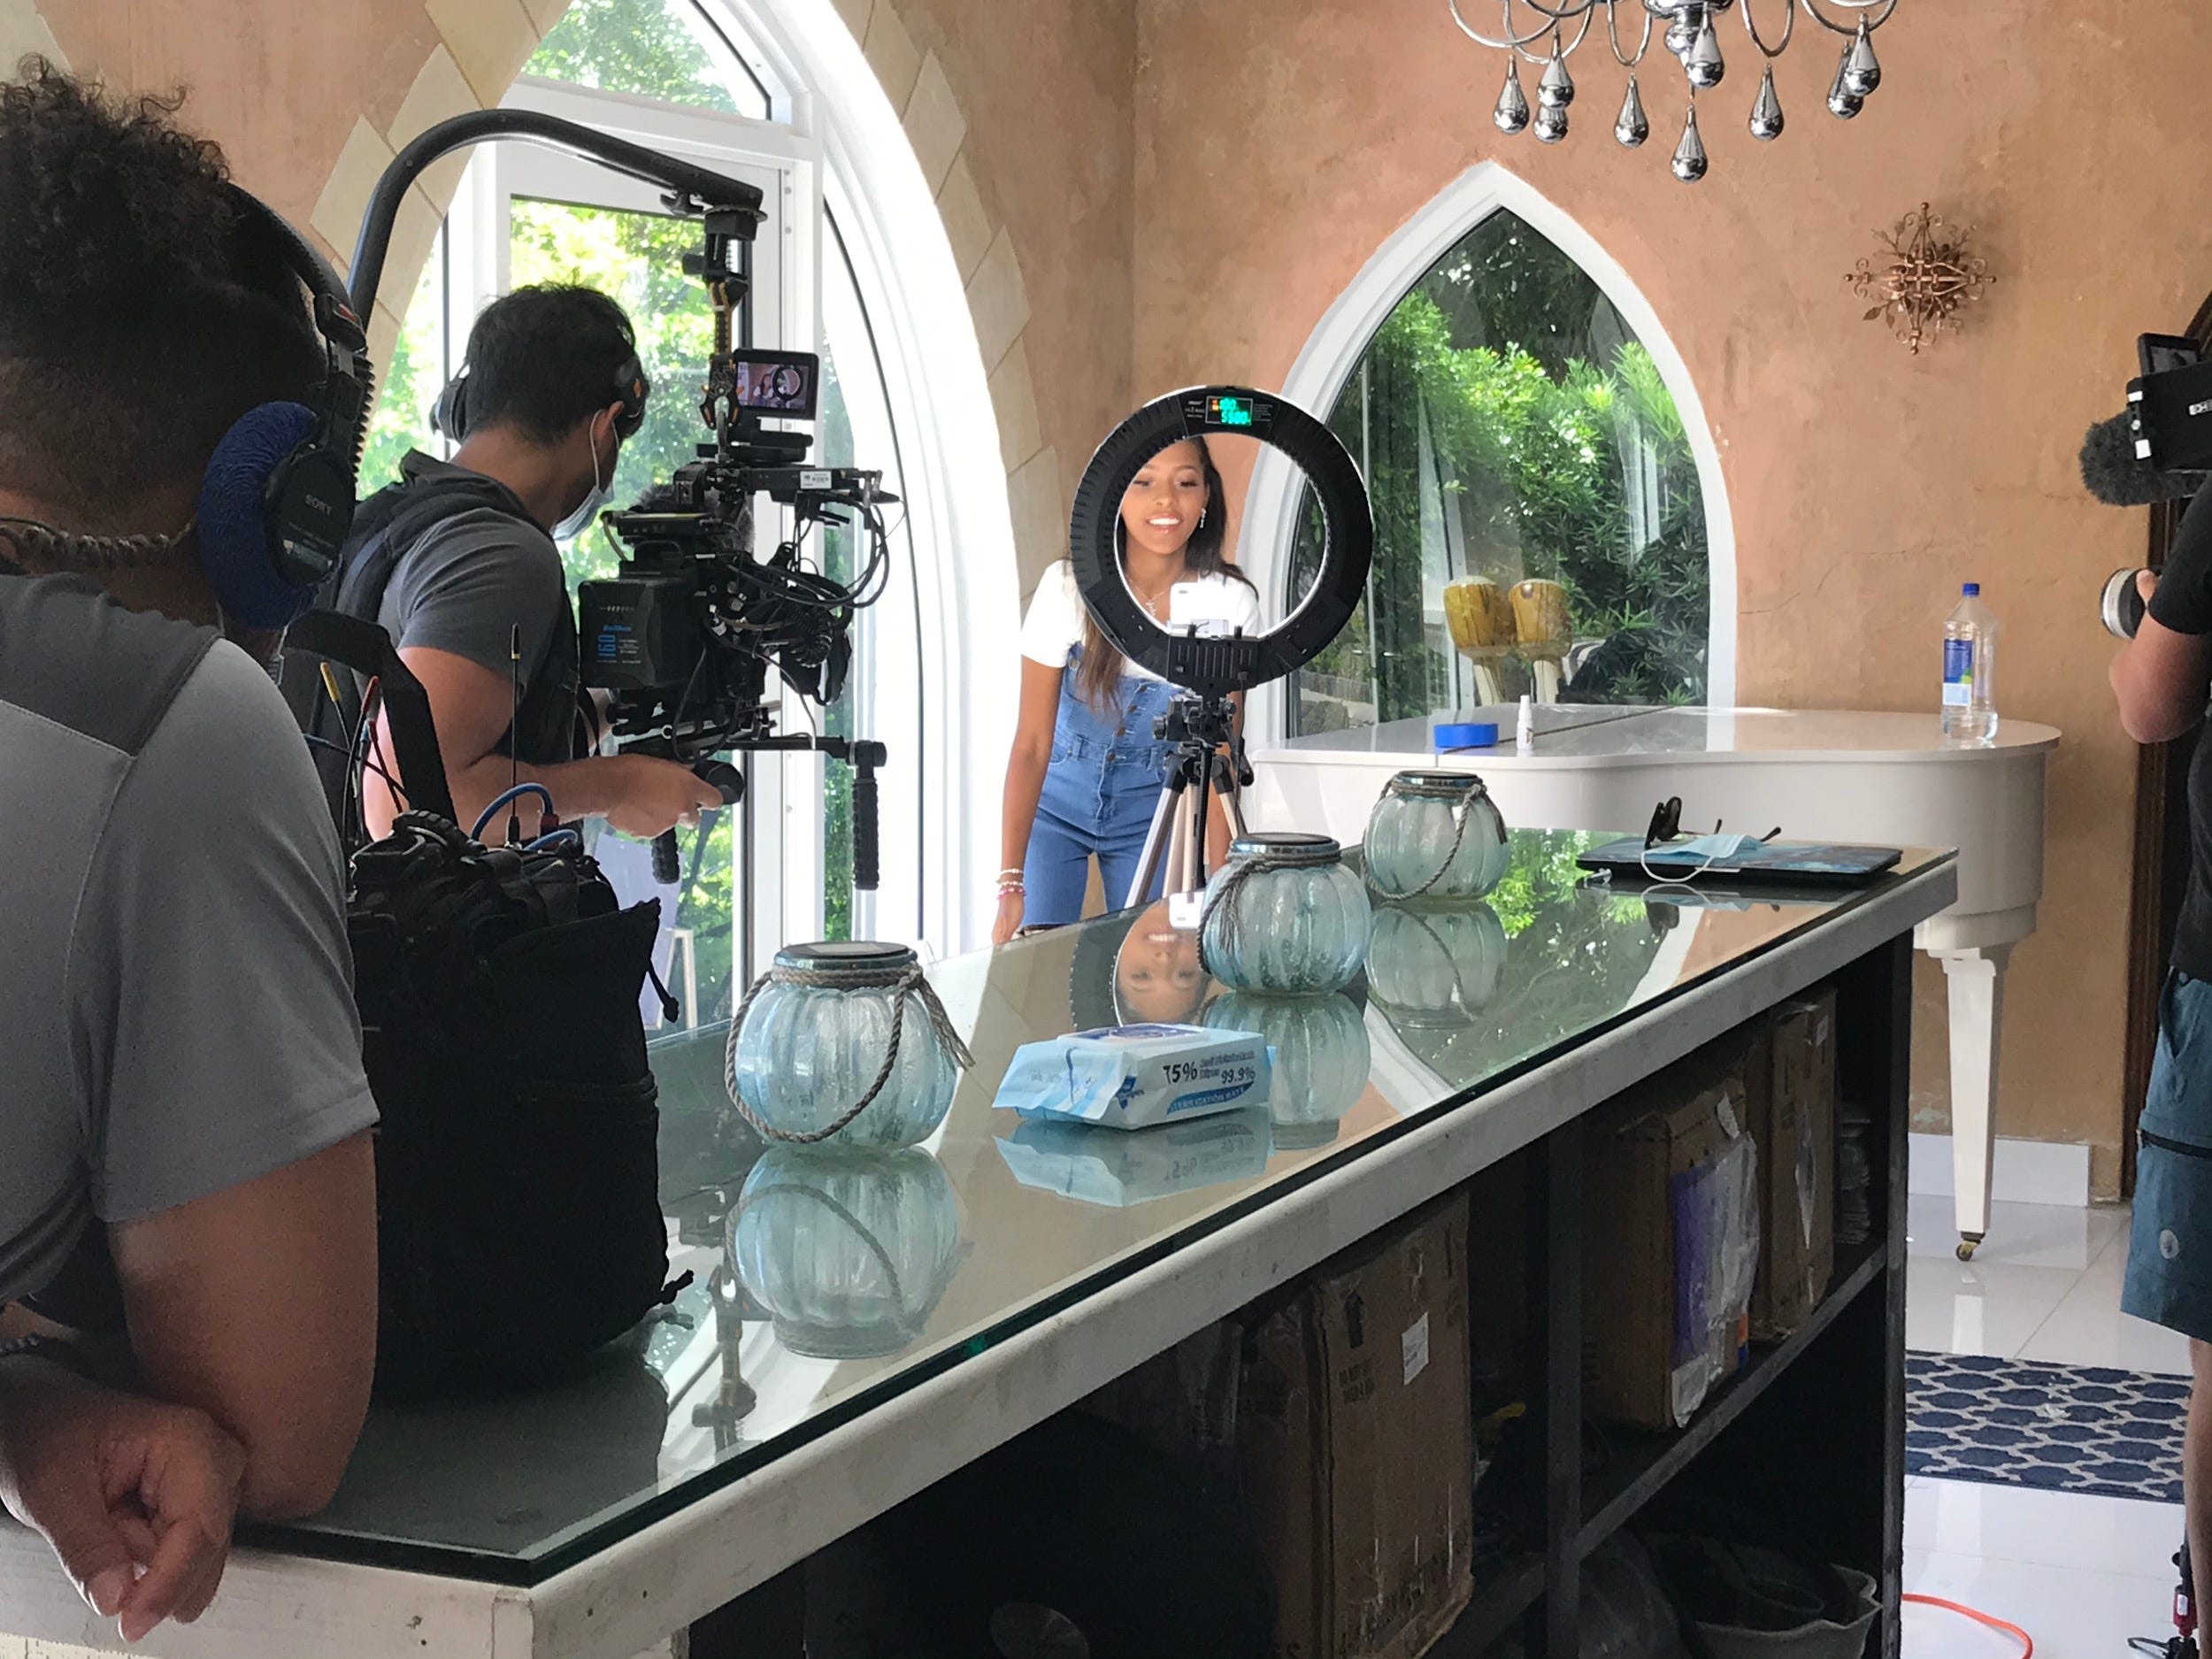 TikTok star Jada Wesley is filmed by AwesomenessTV's crew for its new reality show "Next Influencer." - Courtesy of AwesomenessTV